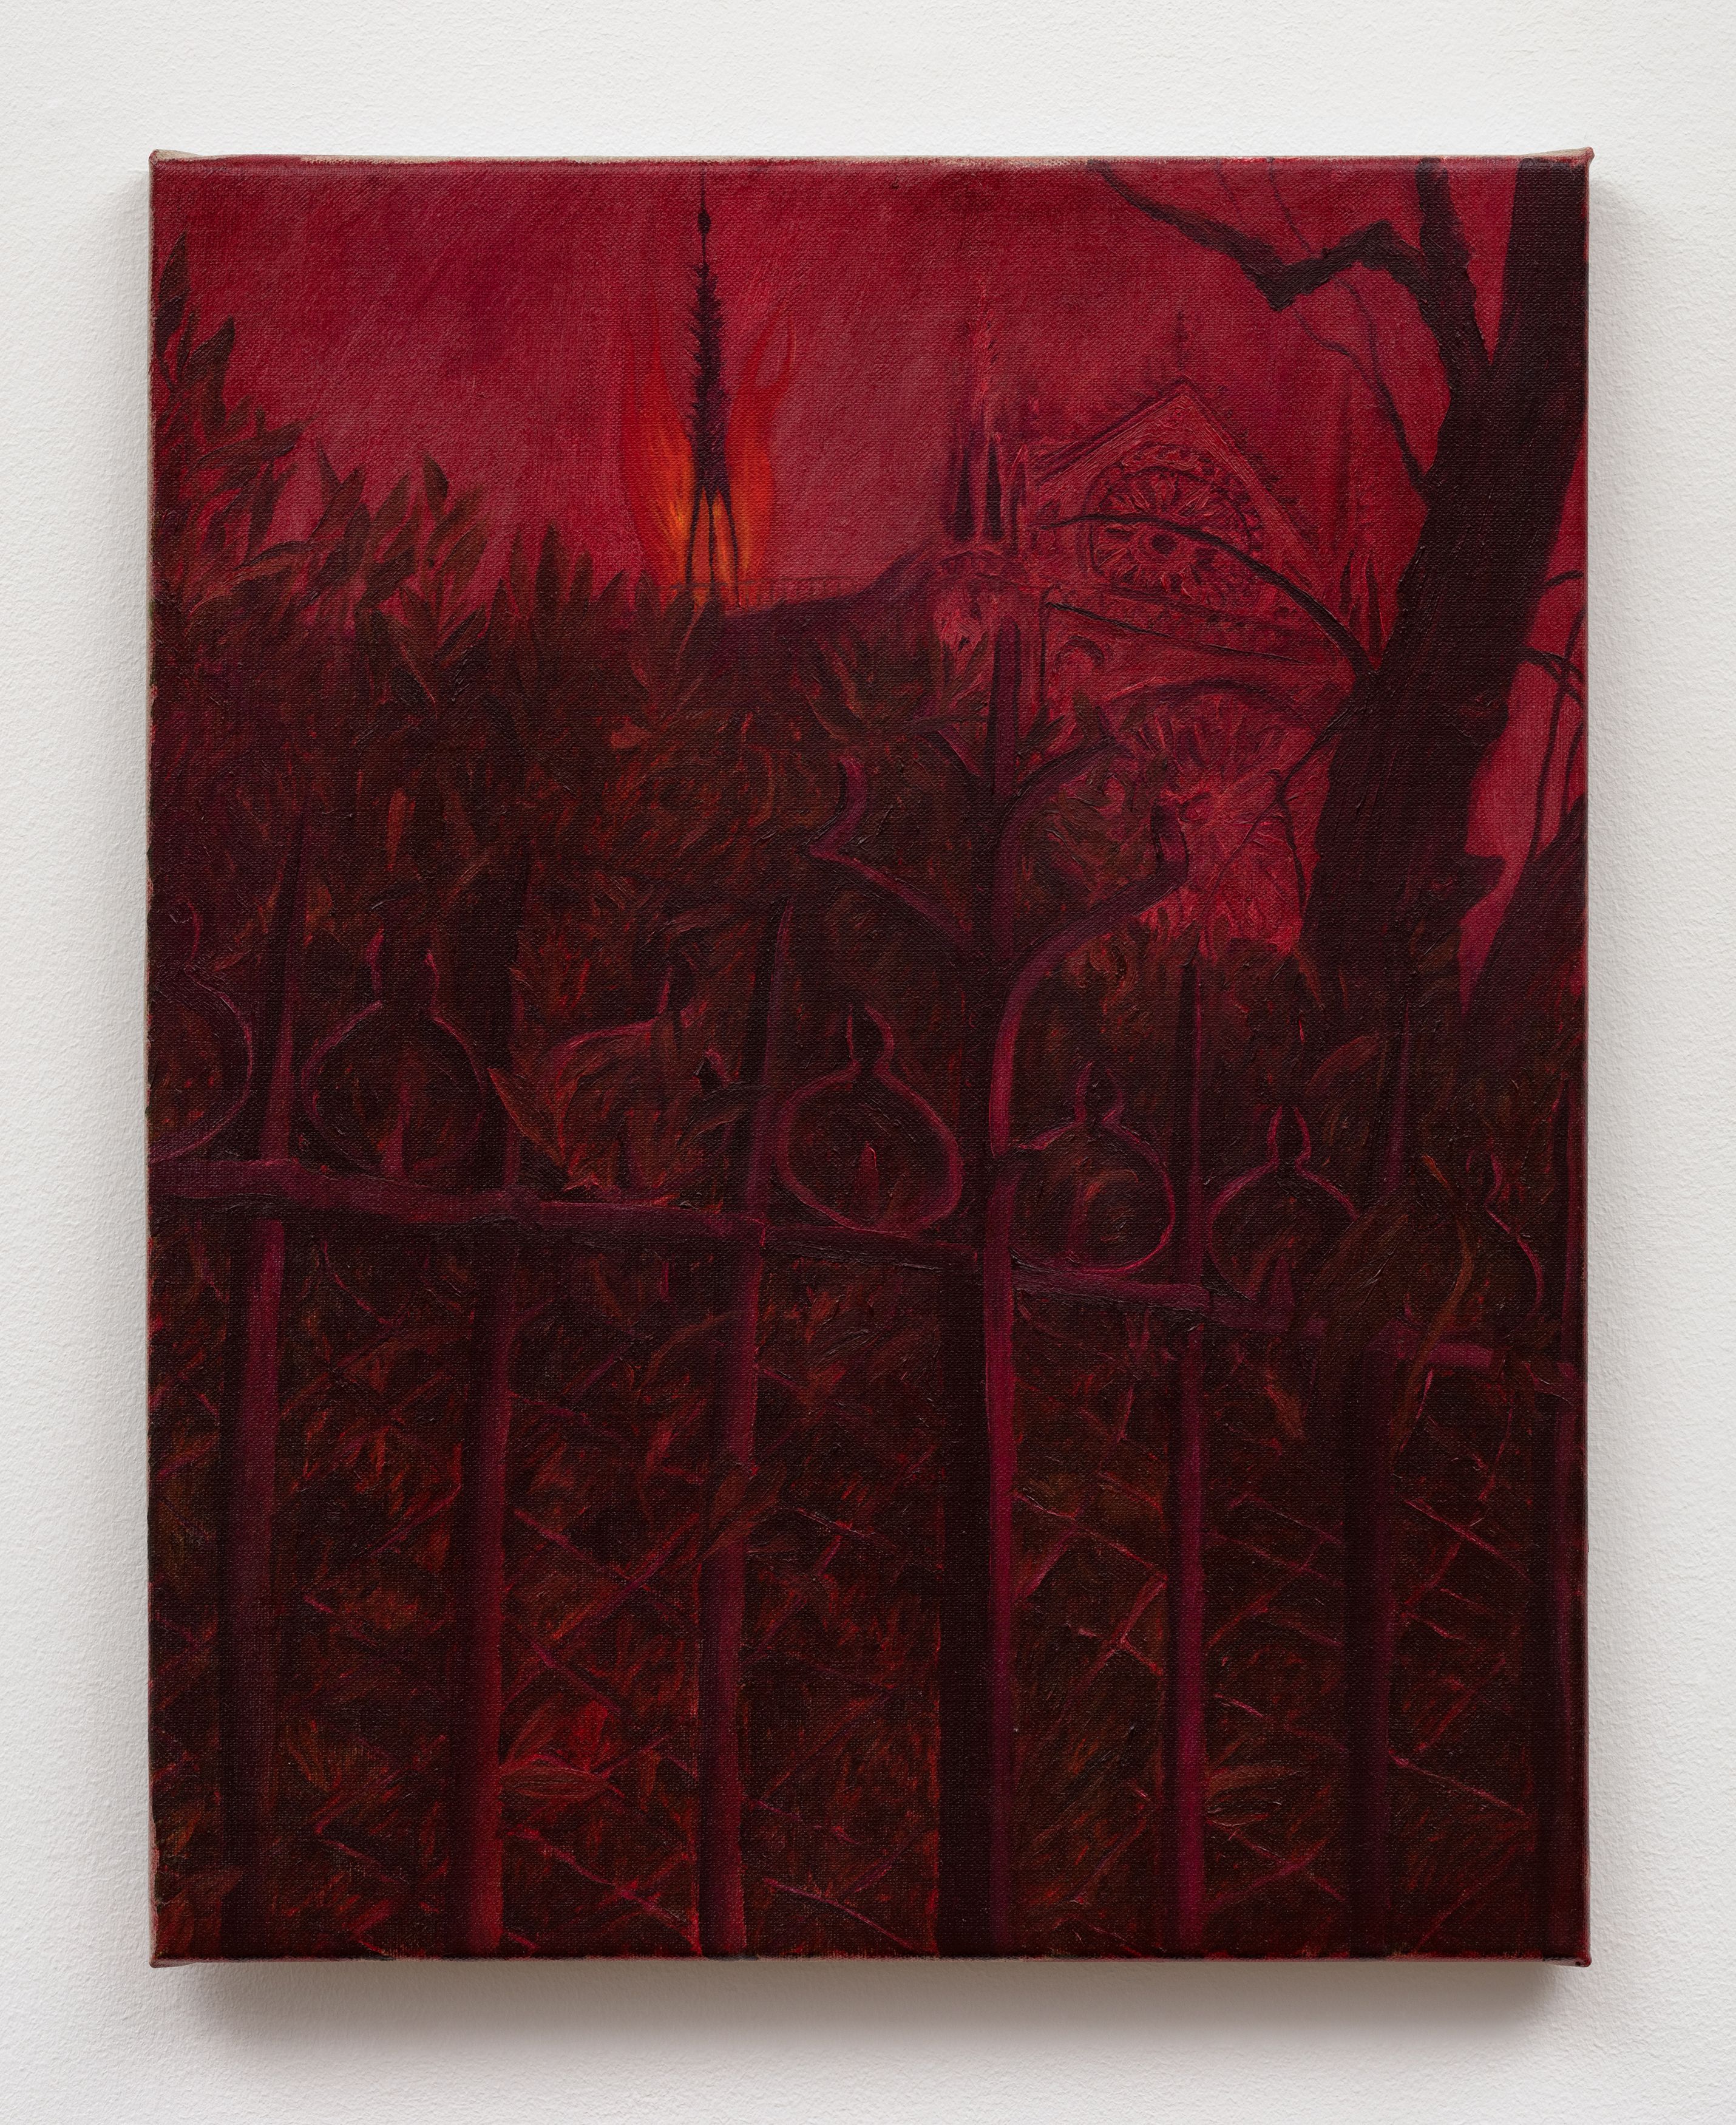 Srijon Chowdhury, Notre Dame on Fire, 2020, oil on linen, 20 x 16 in. (50.8 x 40.64 cm)